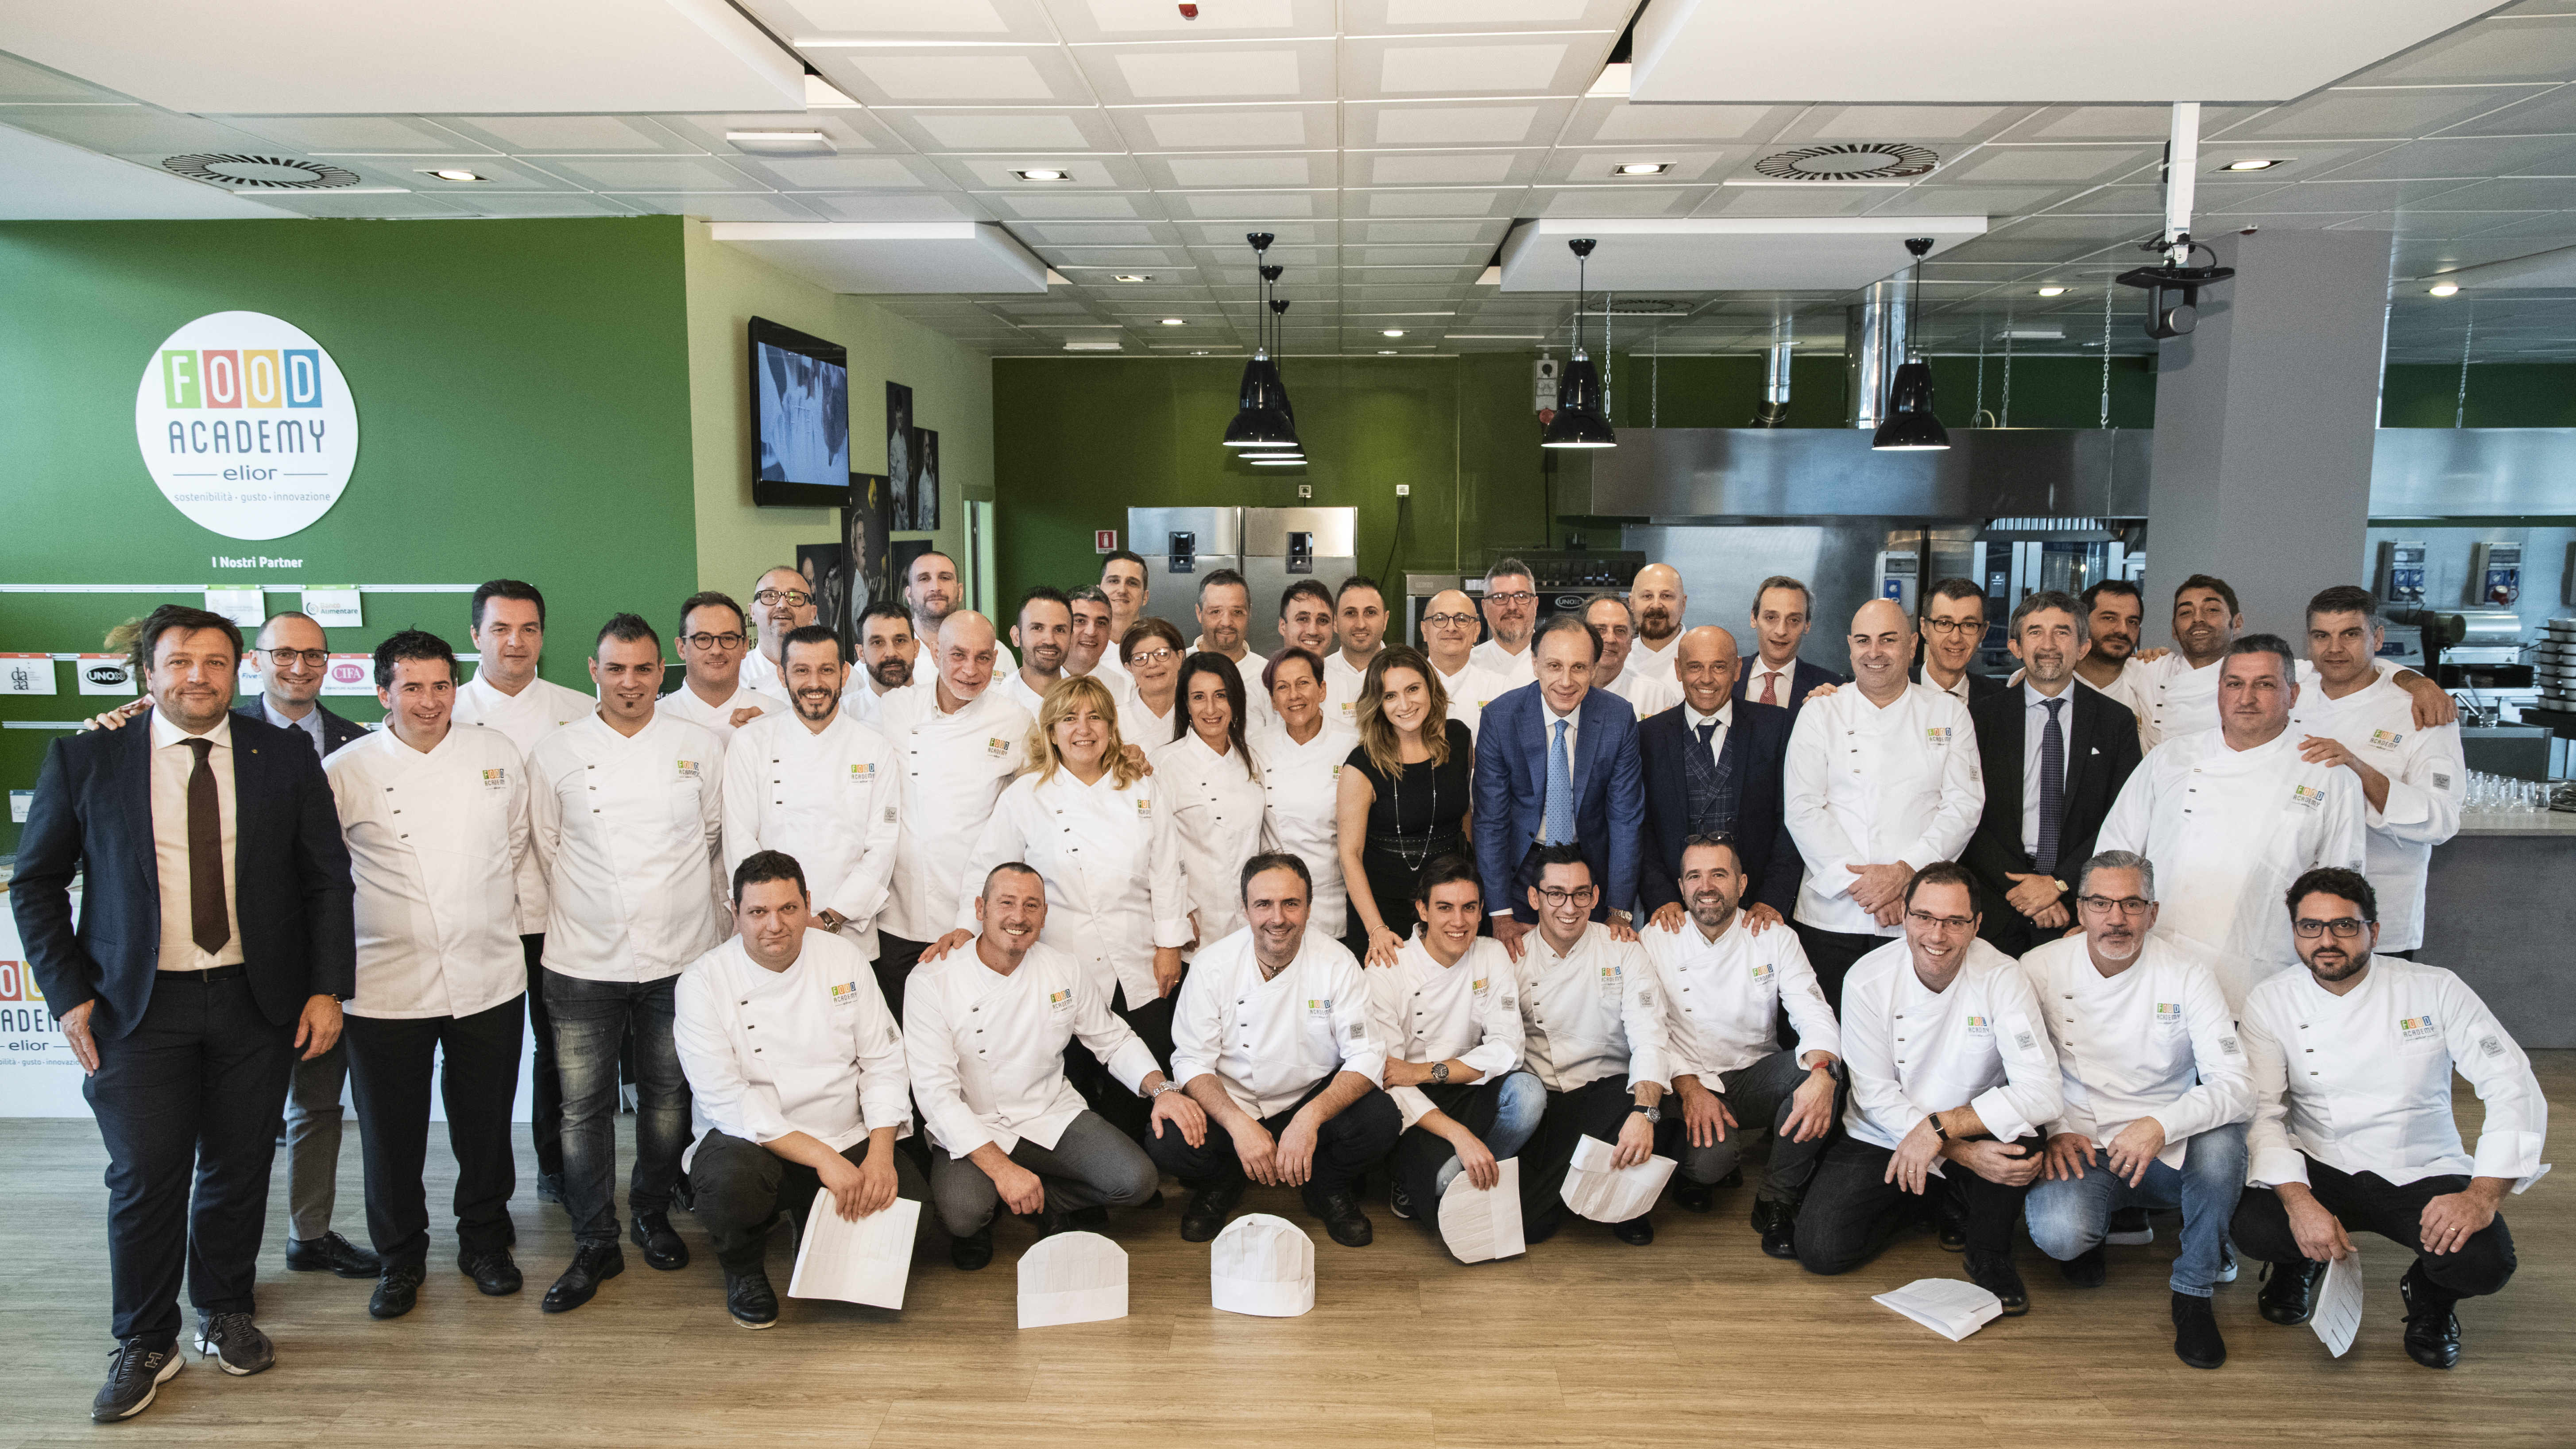 Chef Carlo Cracco inaugura l’anno accademico della Food Academy